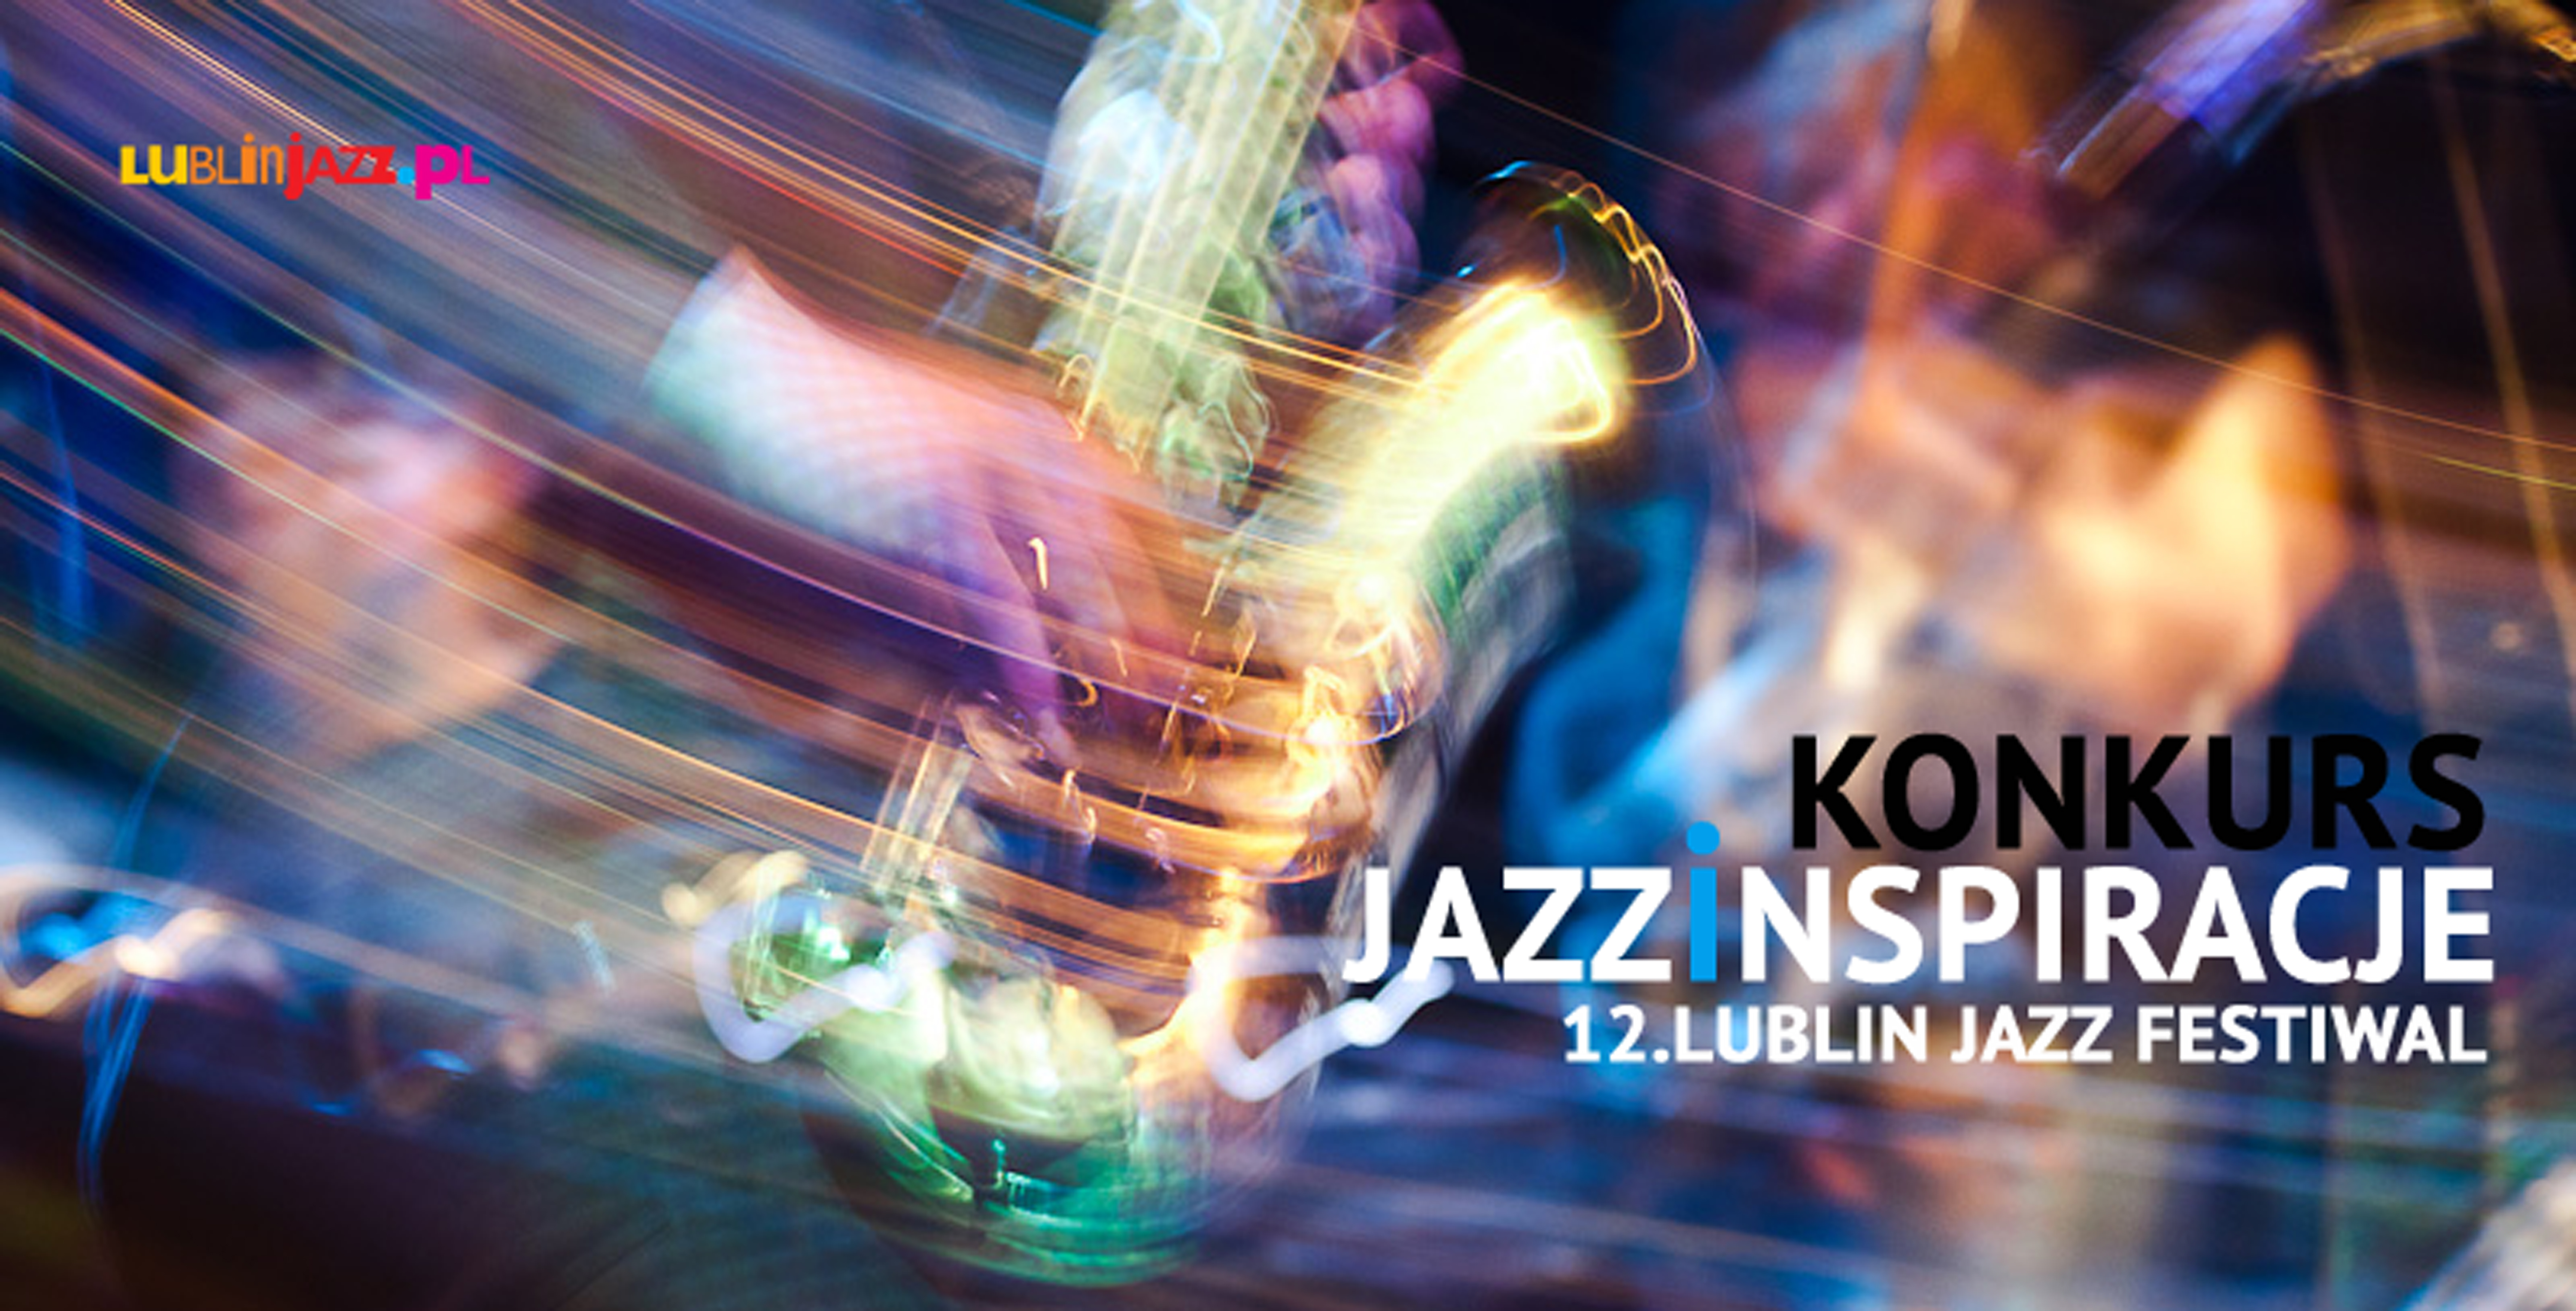 Grafika przedstawia kolorowe rozmazane zdjęcie, na którym znajduje się zarys sylwetki grającej na saksofonie. Jest to prawdopodobnie scena oświetlona kolorowymi światłami. W lewym górnym rogu kolorowy napis: lublinjazz.pl, w prawym dolnym rogu czarno biały napis: JazzInspiracje 12. Lublin jazz festiwal